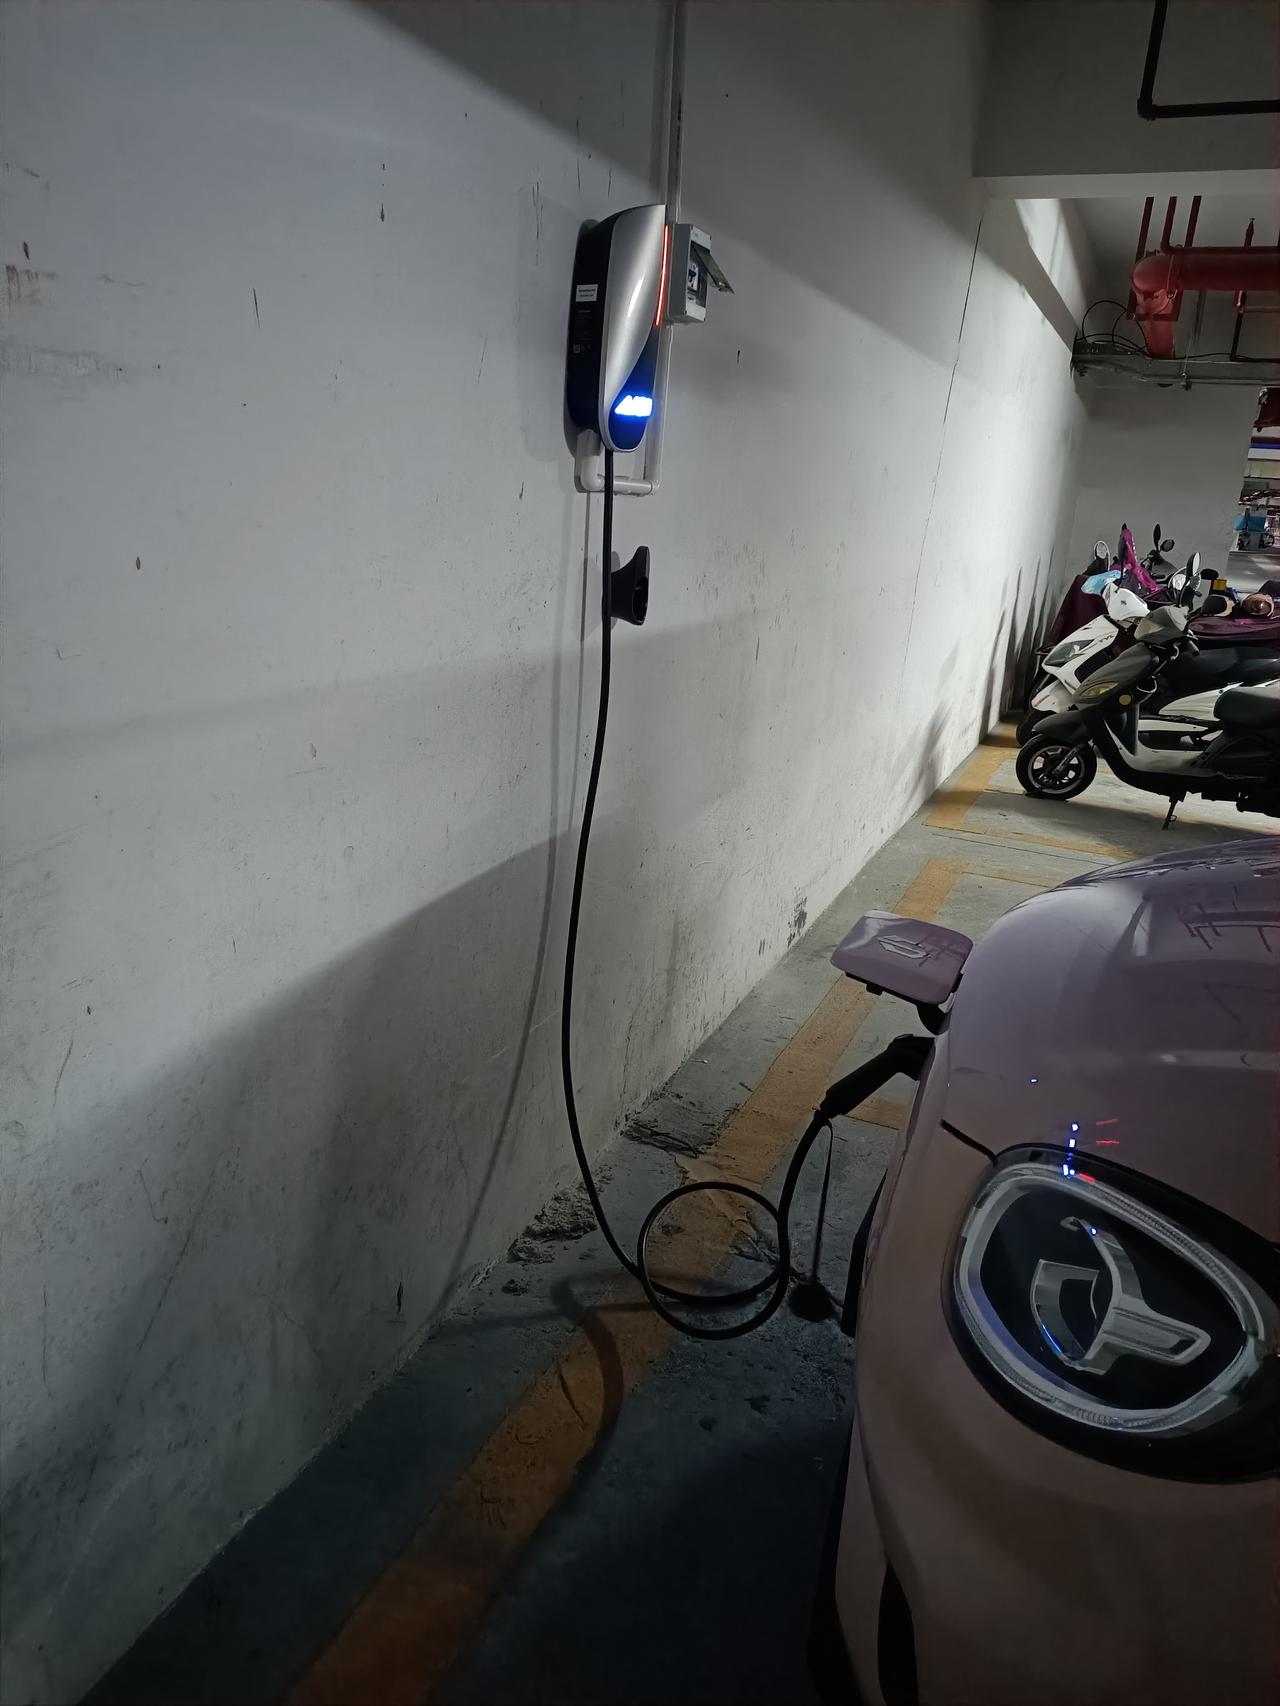 埃安AION Y 你们的埃安充电桩能给其他品牌汽车充电吗？我的零跑T03充不了，问厂家客服说国标都能充，问充电桩生产厂家